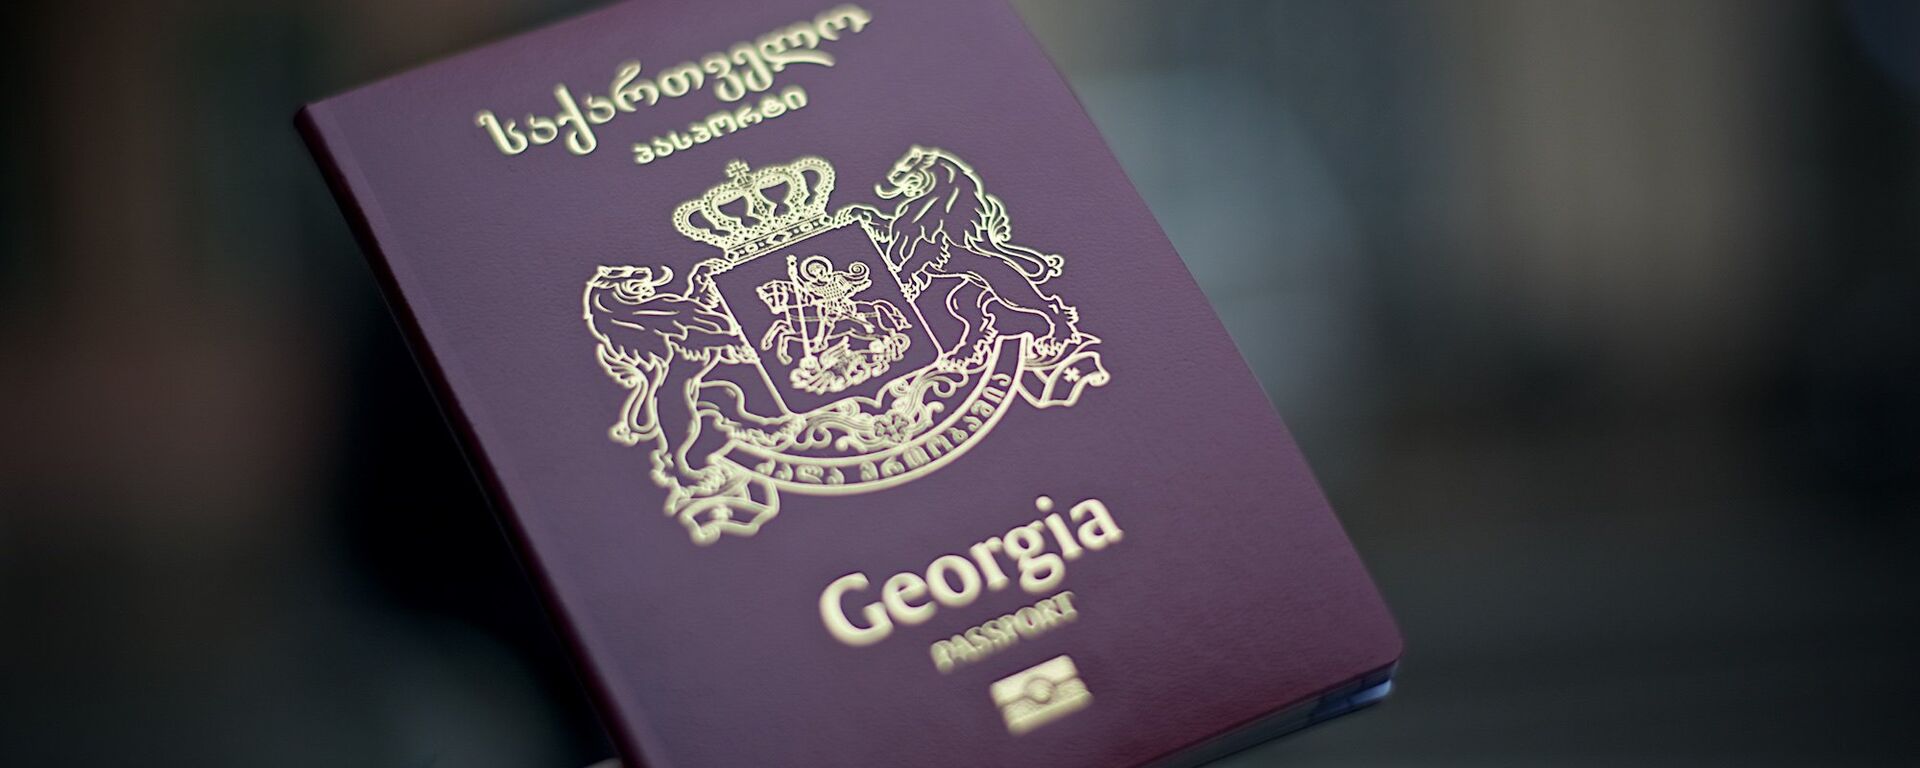 Грузинский международный биометрический паспорт - Sputnik Грузия, 1920, 08.10.2019